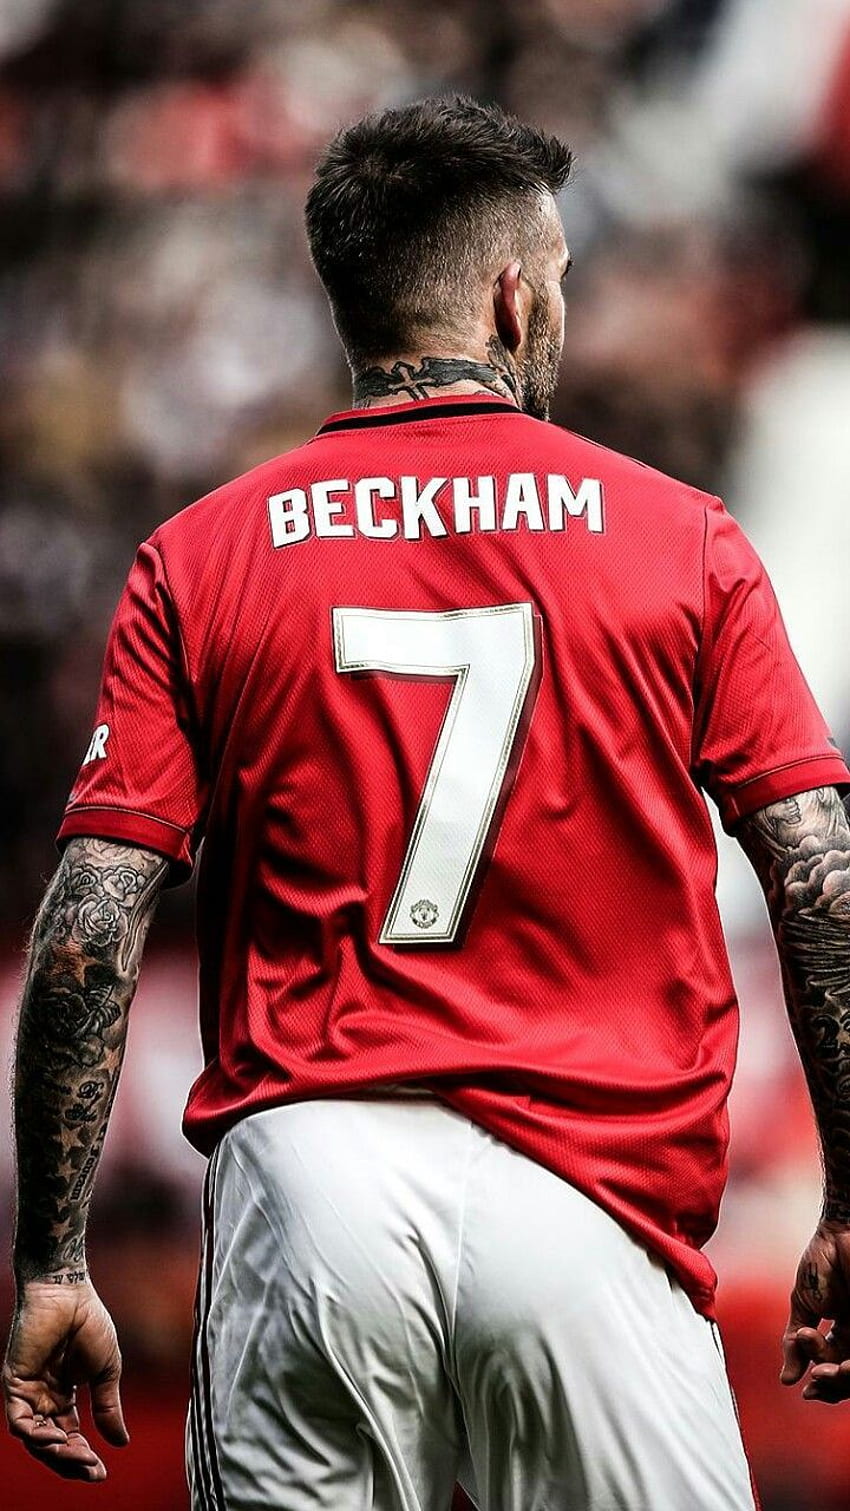 ide david beckham. david beckham, beckham, manchester united , David Beckham iPhone wallpaper ponsel HD